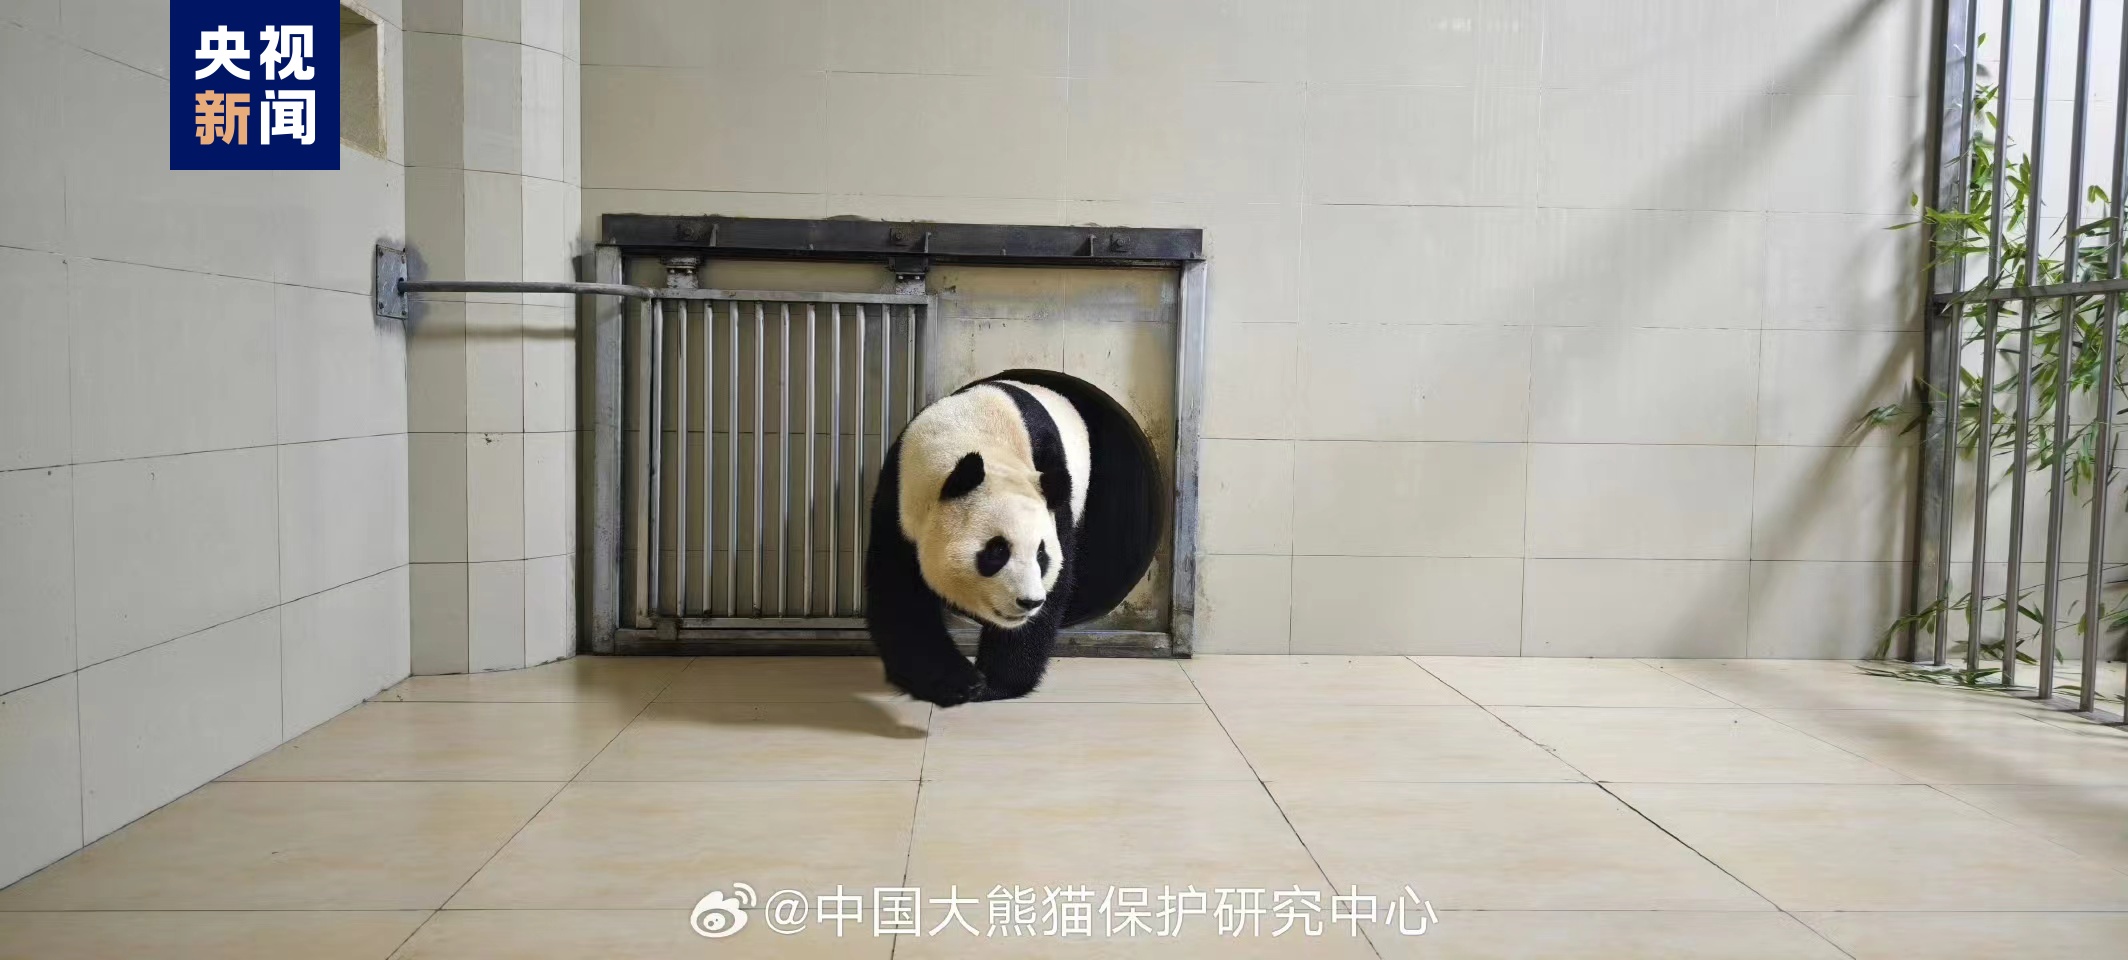 大熊猫“福宝”已利市抵家 状况优异